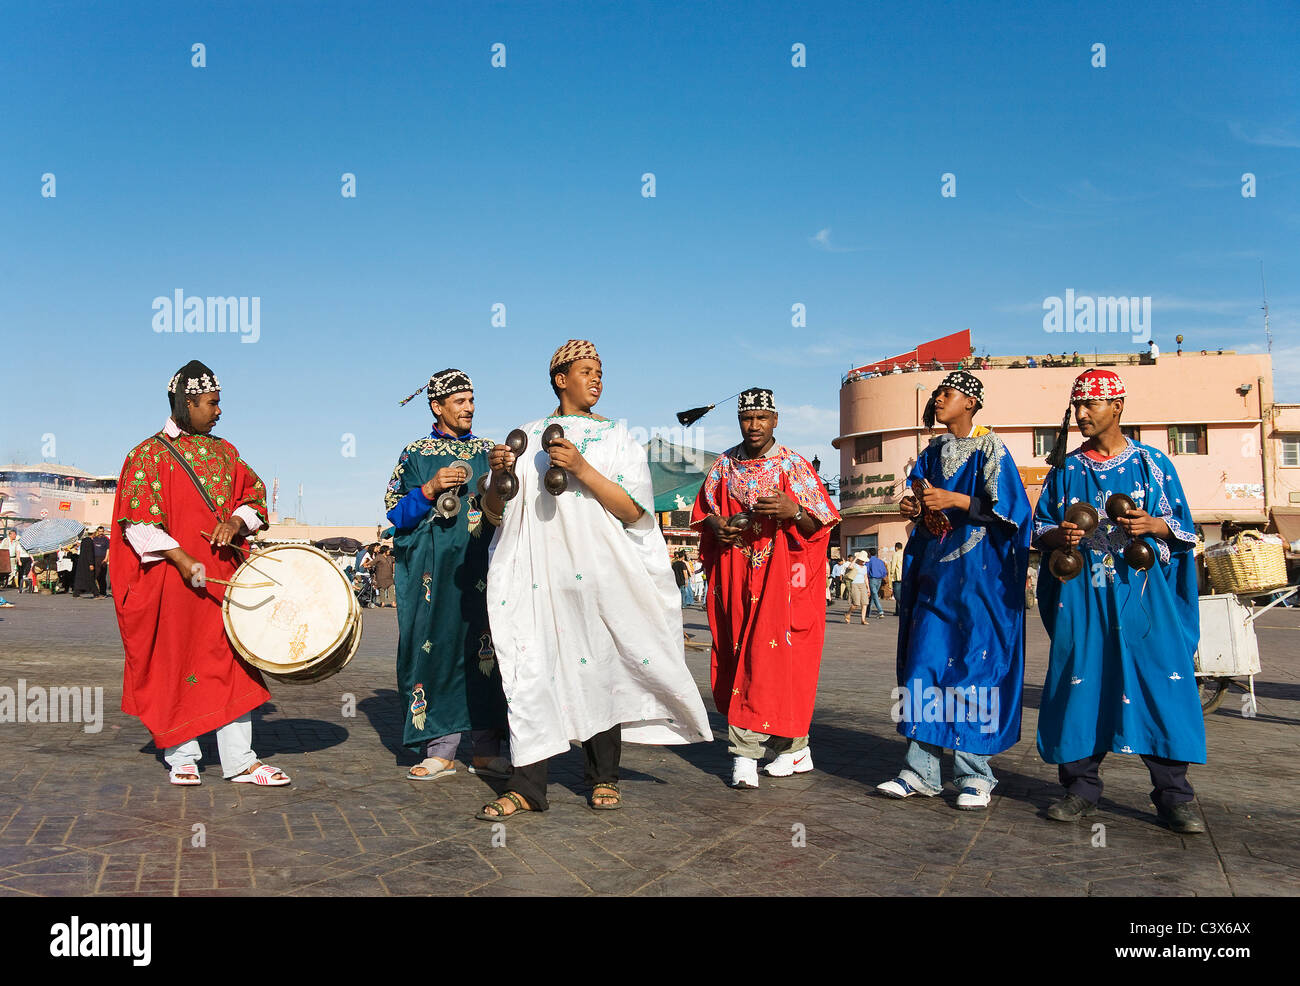 Des musiciens en costume traditionnel de divertir les touristes et les habitants de la place Djemaa el Fna place du marché. Marrakech, Maroc. Banque D'Images